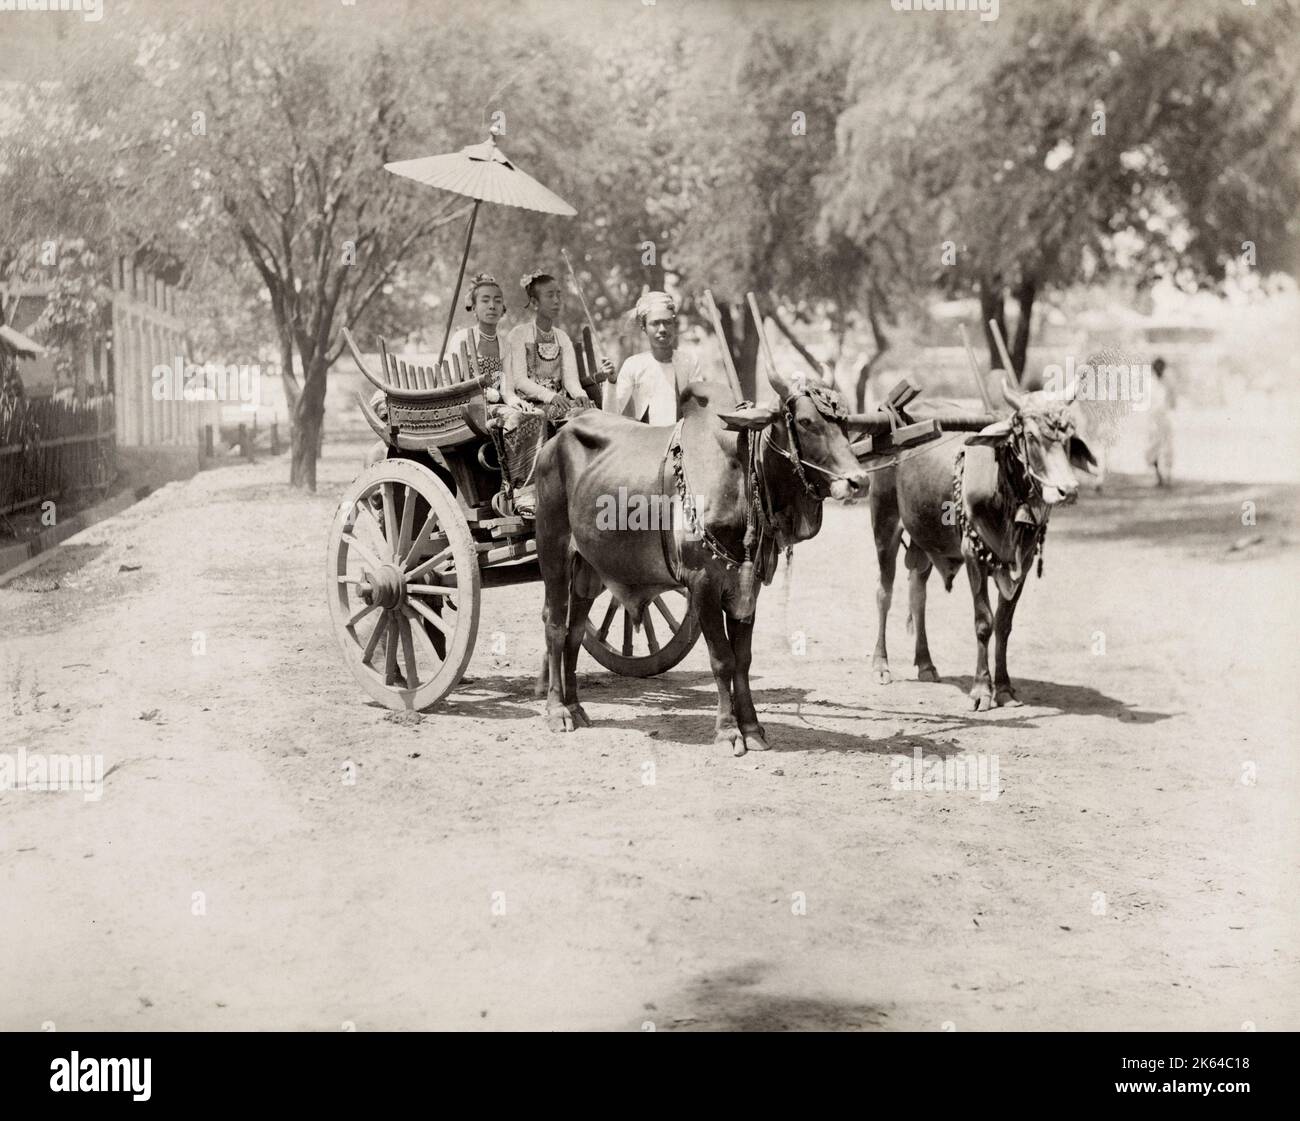 Photo du XIXe siècle : chariot bullock avec chauffeur et deux femmes bien vêtues, Inde britannique, Birmanie, Myanmar, c.1890. Banque D'Images